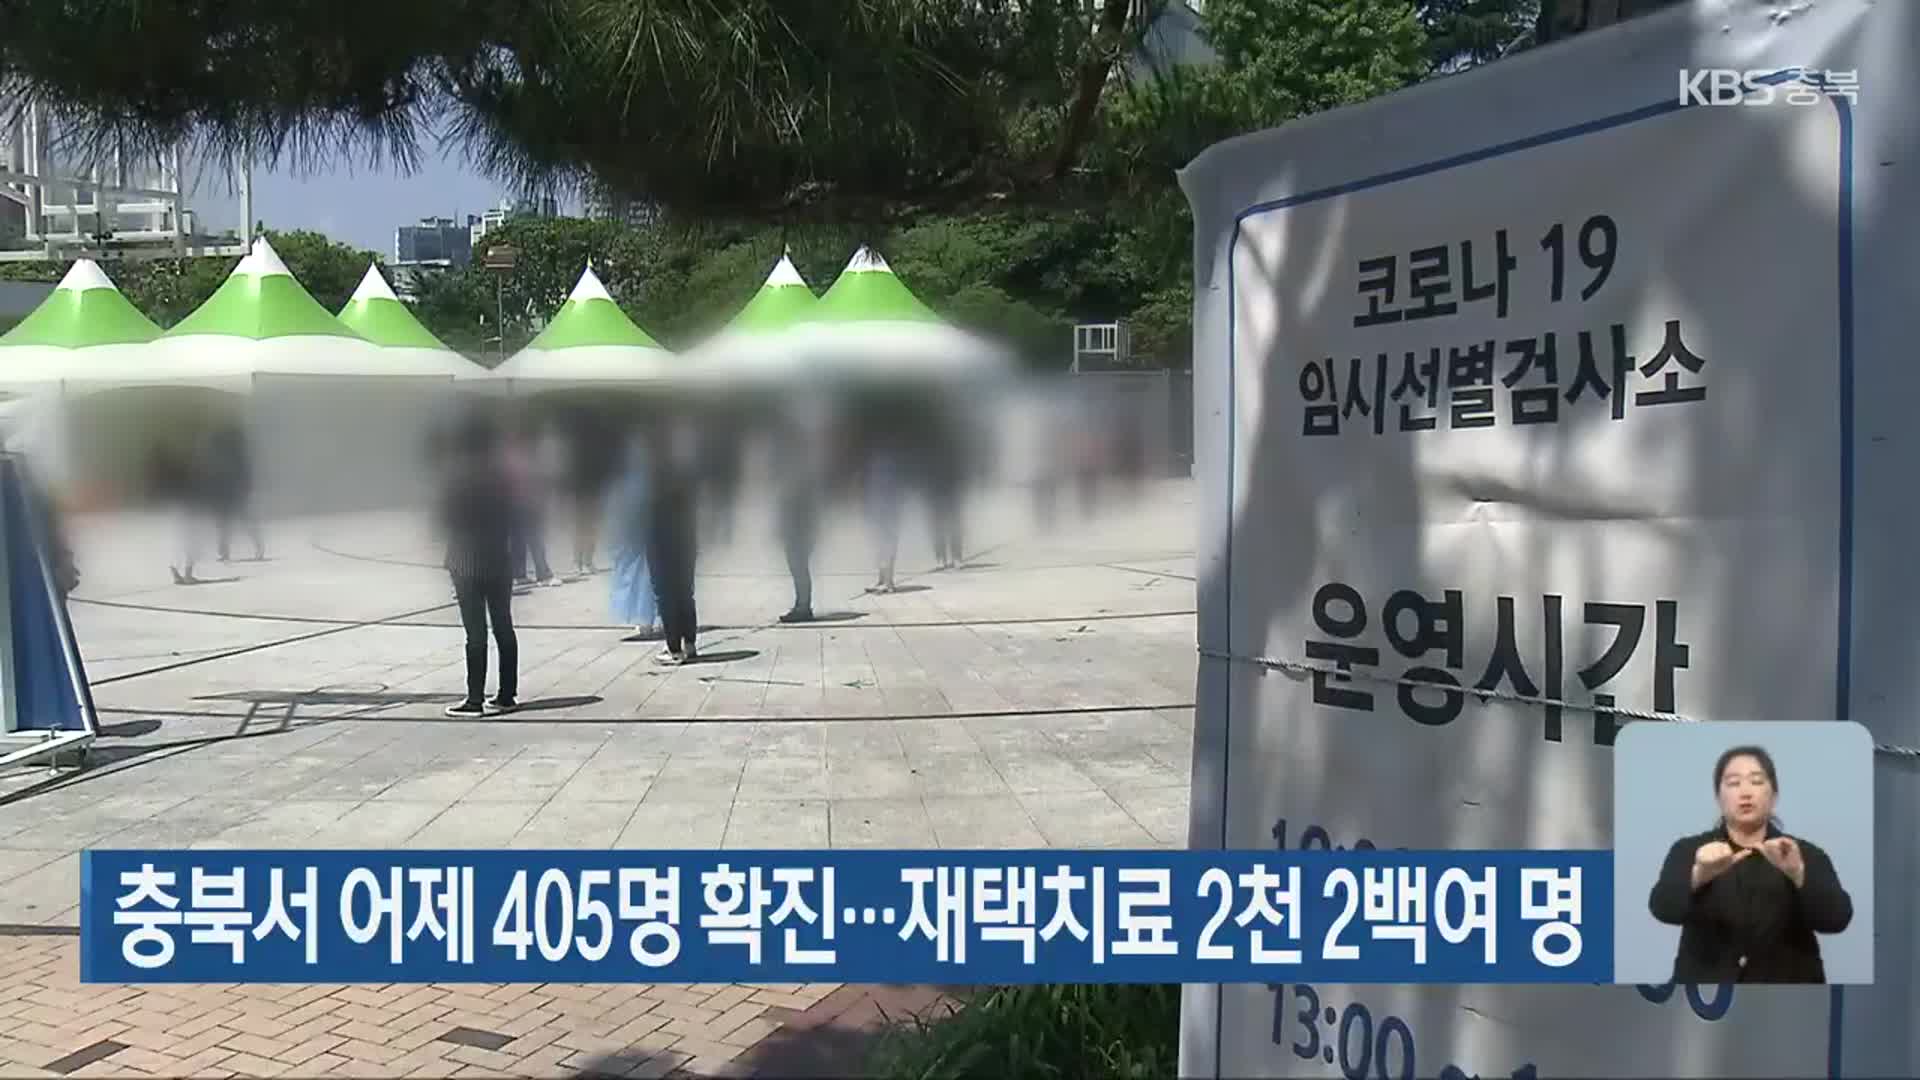 충북서 어제 405명 확진…재택치료 2천 2백여 명